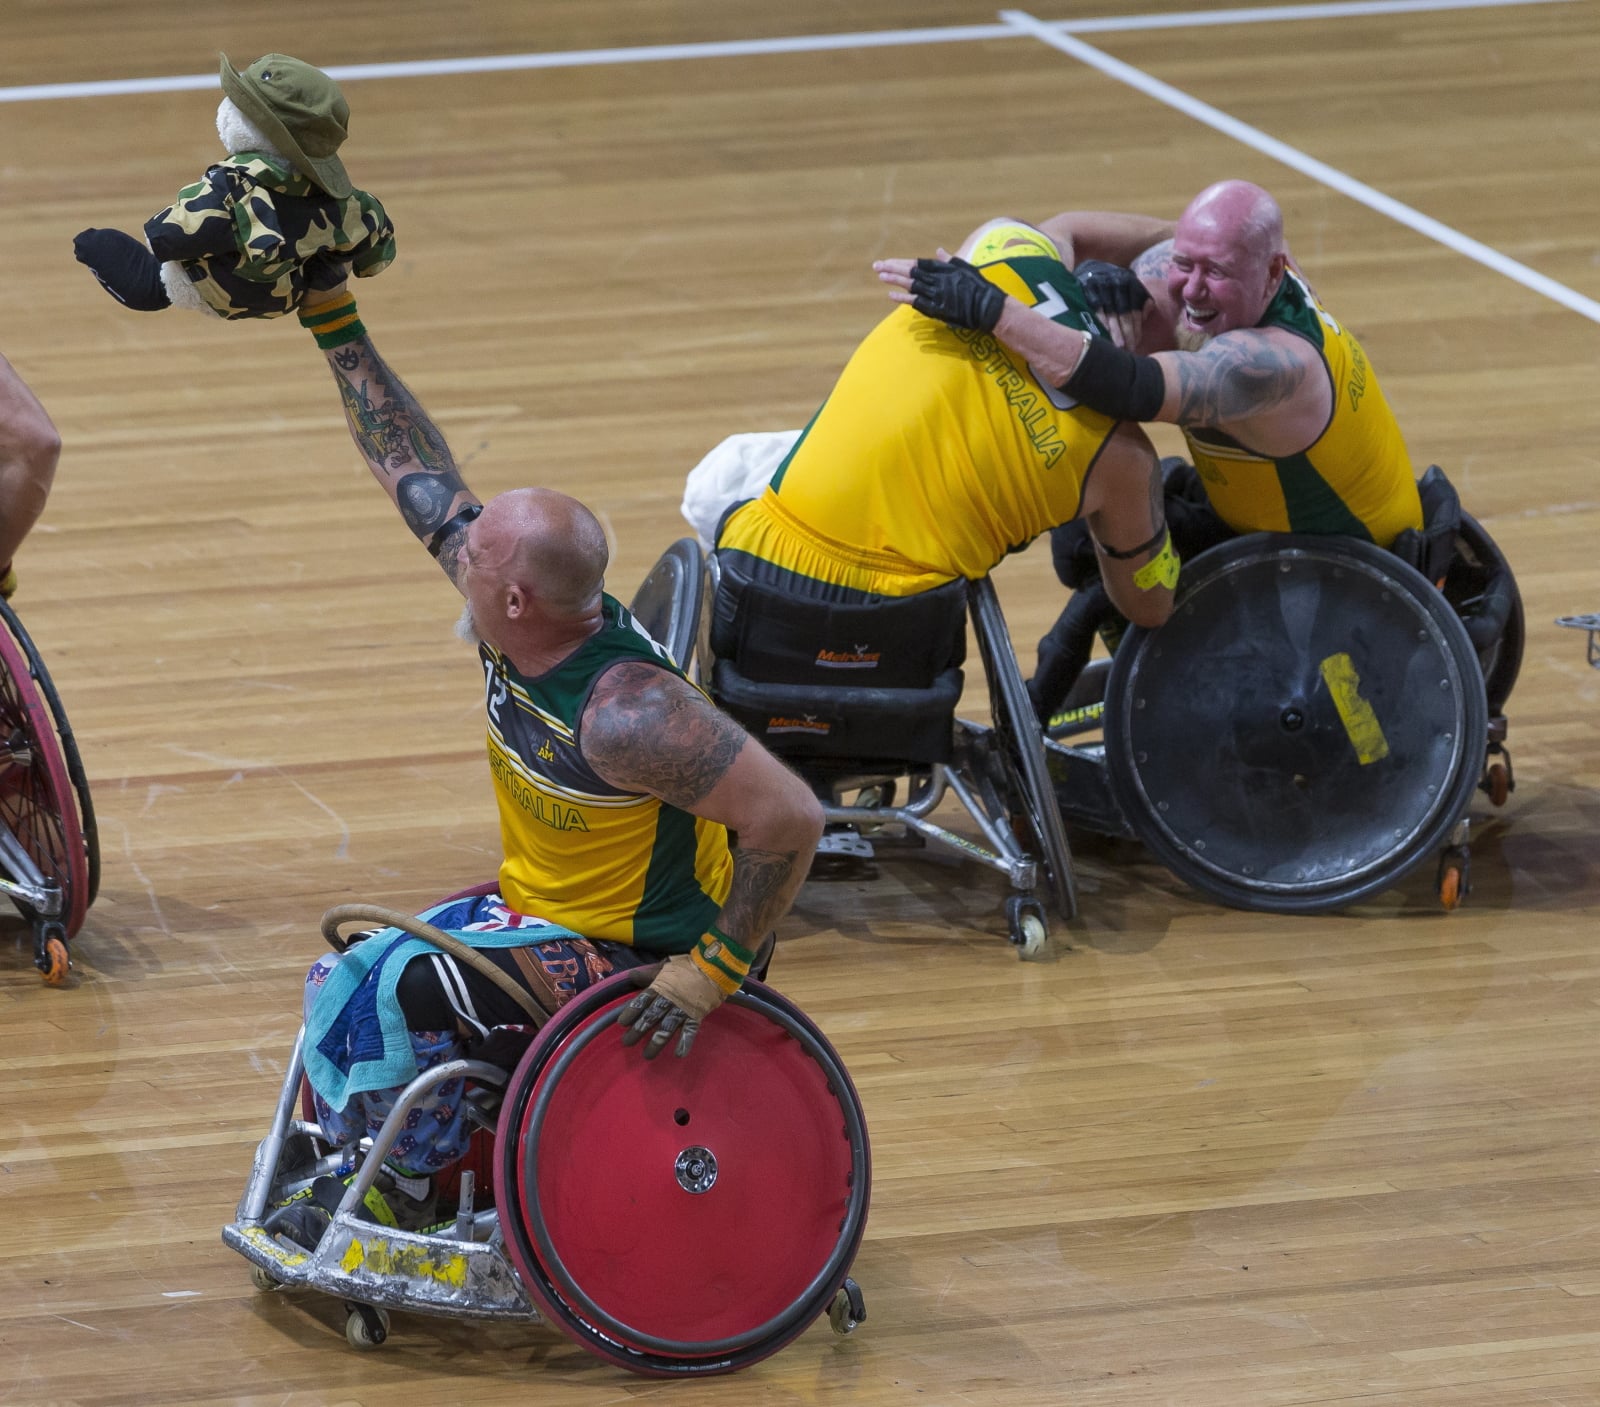 Członkowie australijskiego zespołu świętują zwycięstwo w konkursie Rugby na wózkach między Australią i USA podczas Invictus Games, w Sydney